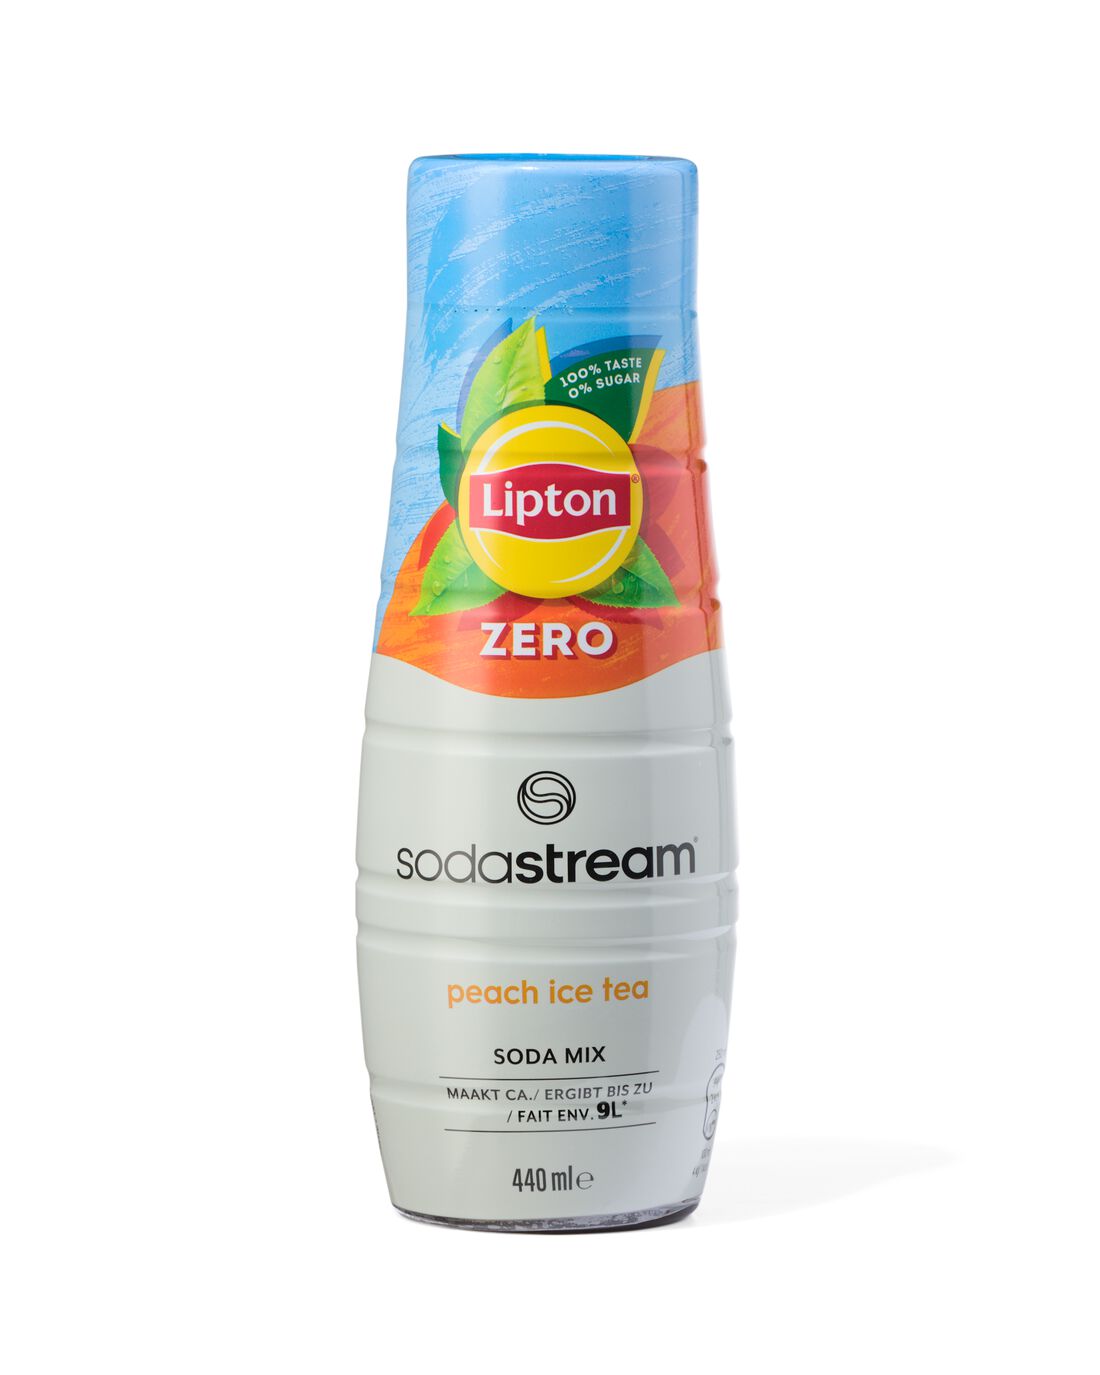 HEMA Lipton Zero Peach Ice Tea SodaStream Siroop Voor 9 Liter